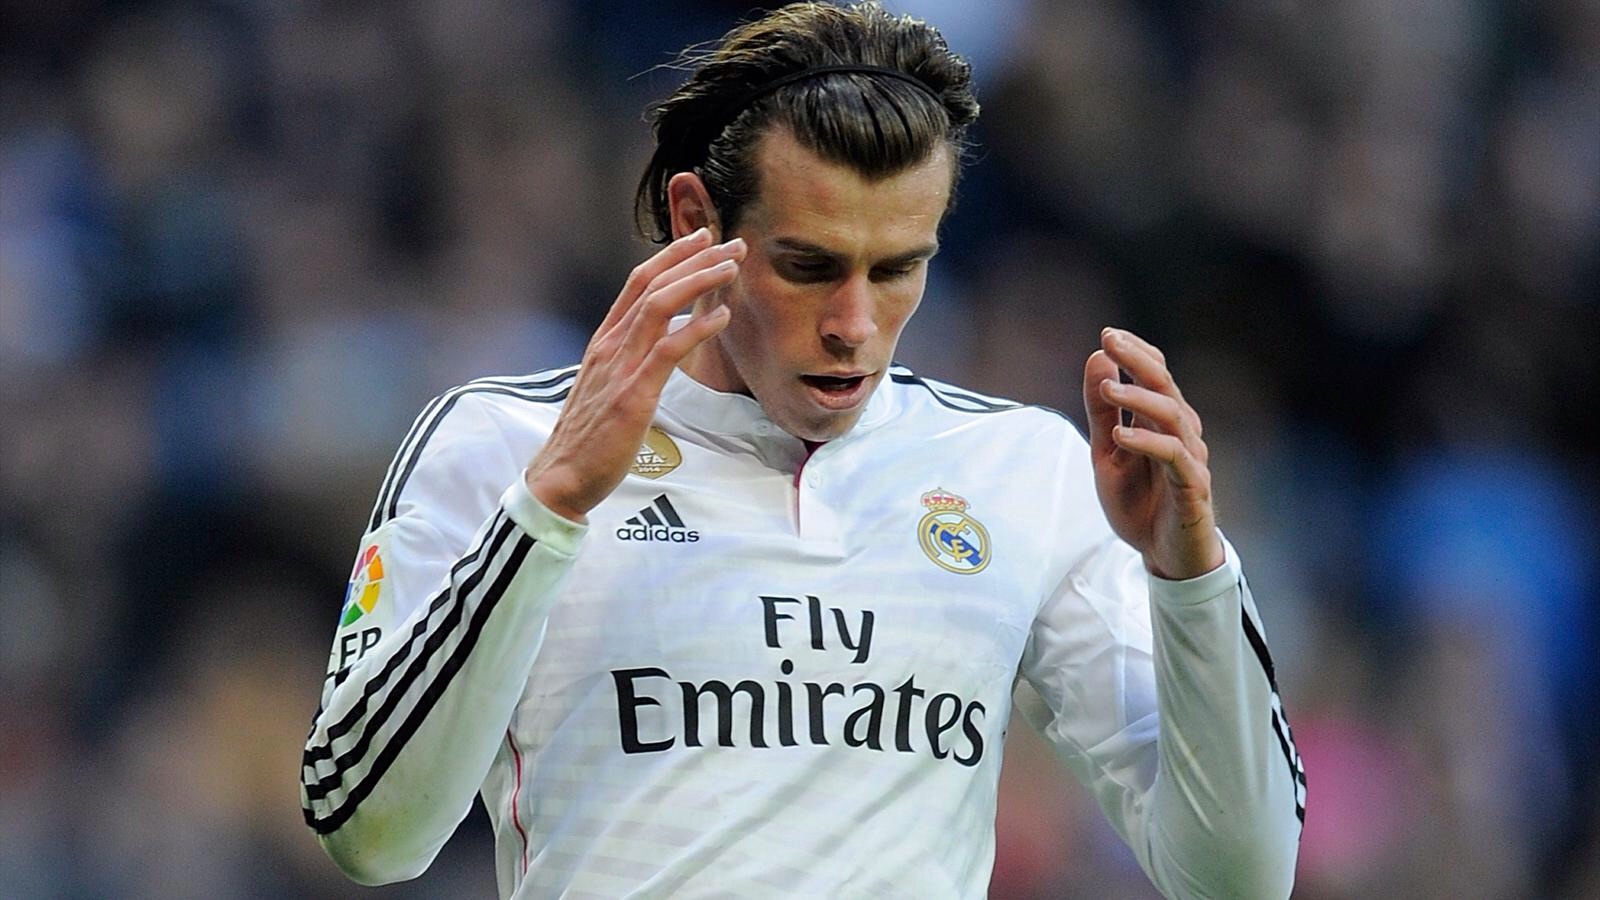 Decoding the reasons behind Gareth Bale's struggles at Real Madrid this season